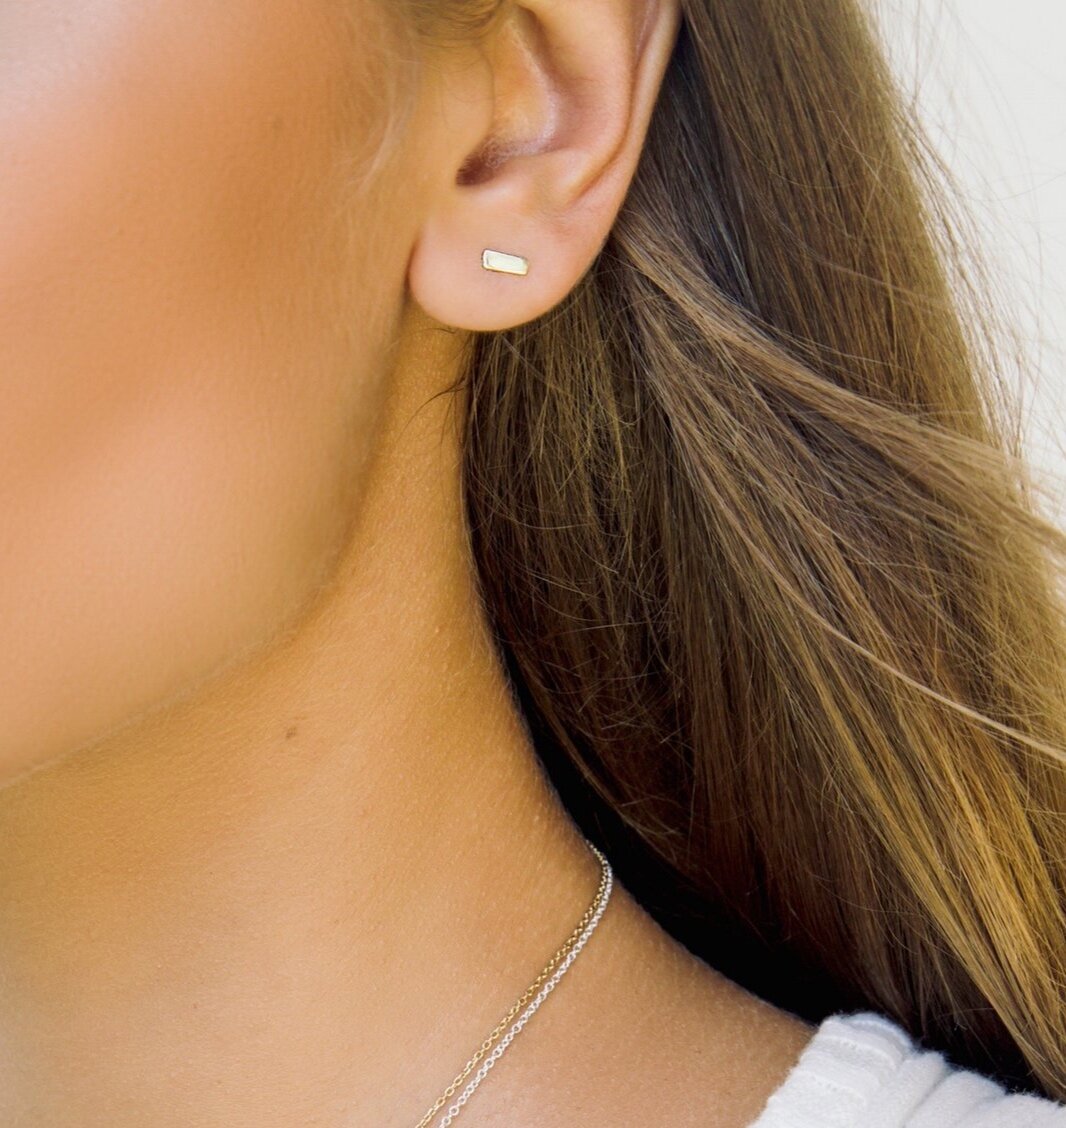 cuboid-stud-earrings-sterling-silver